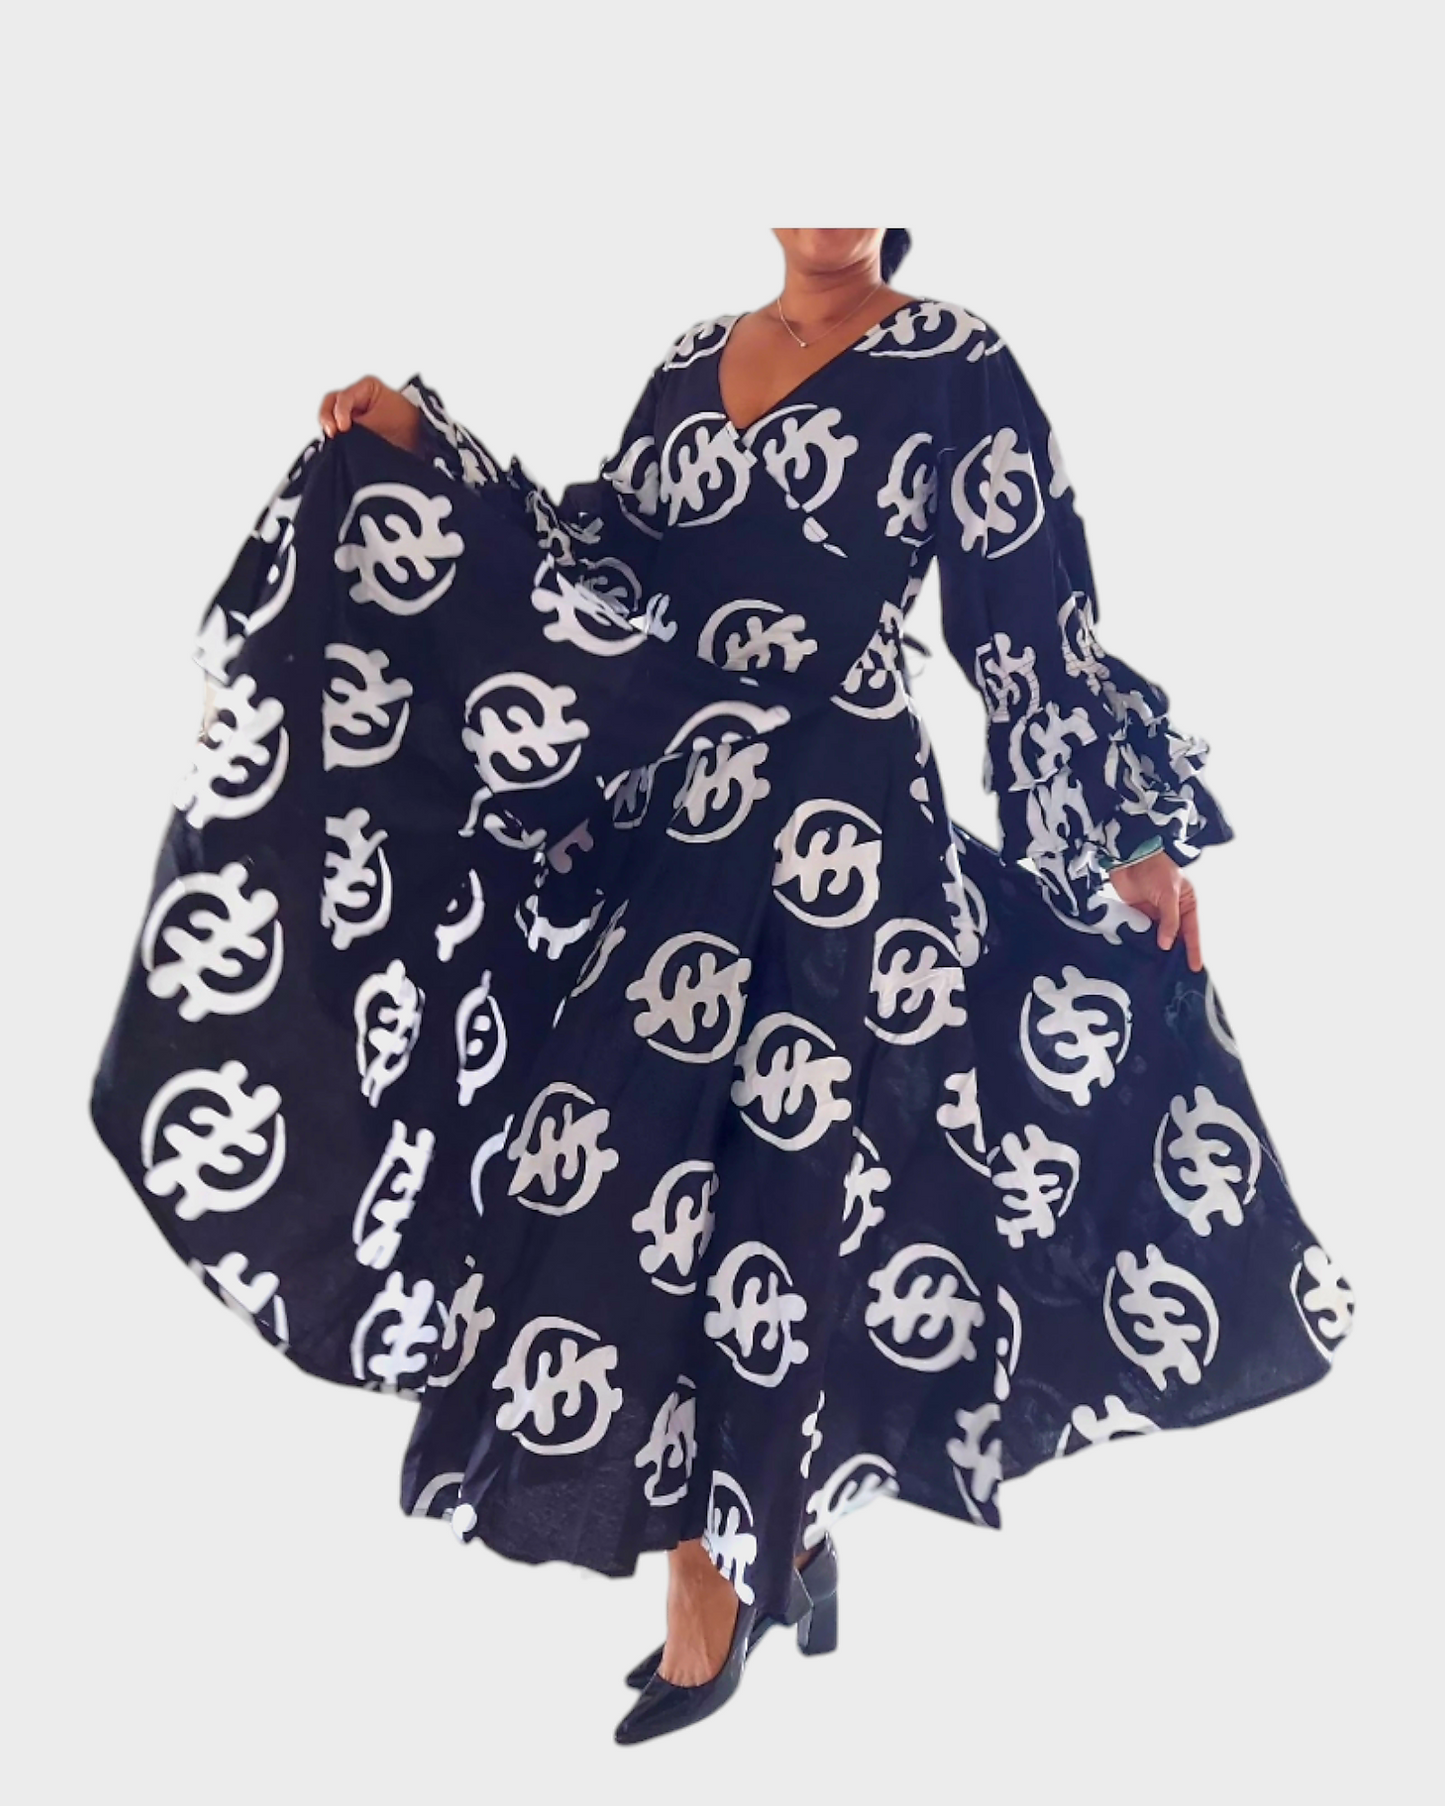 70-Woman's Long Wrap Dress- Gynamee Print